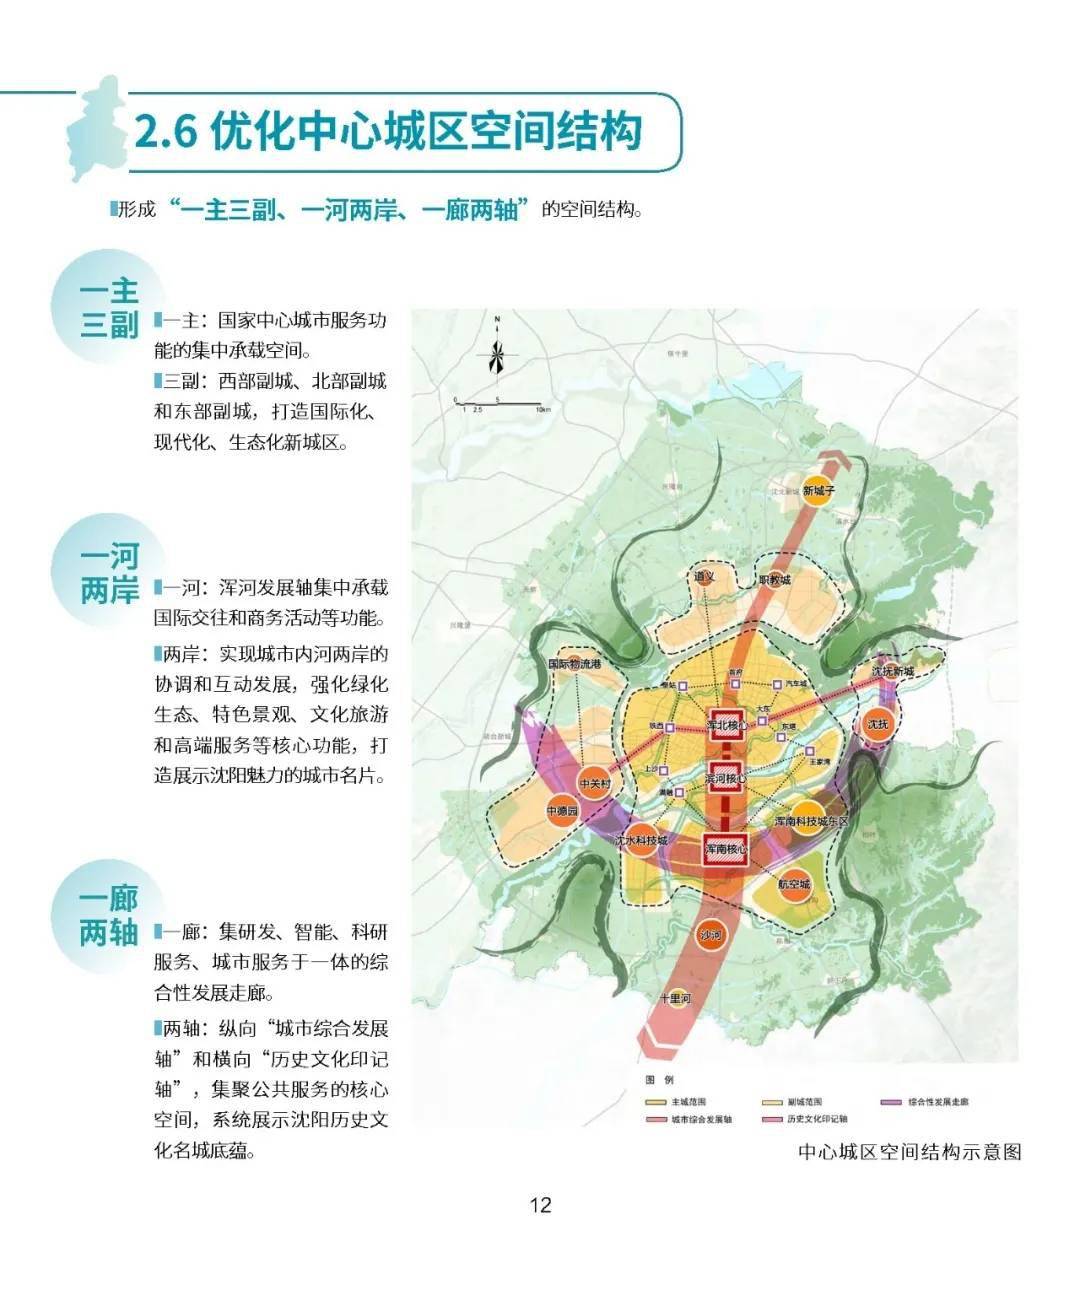 沈阳市国土空间总体规划20212035年草案公开征询意见